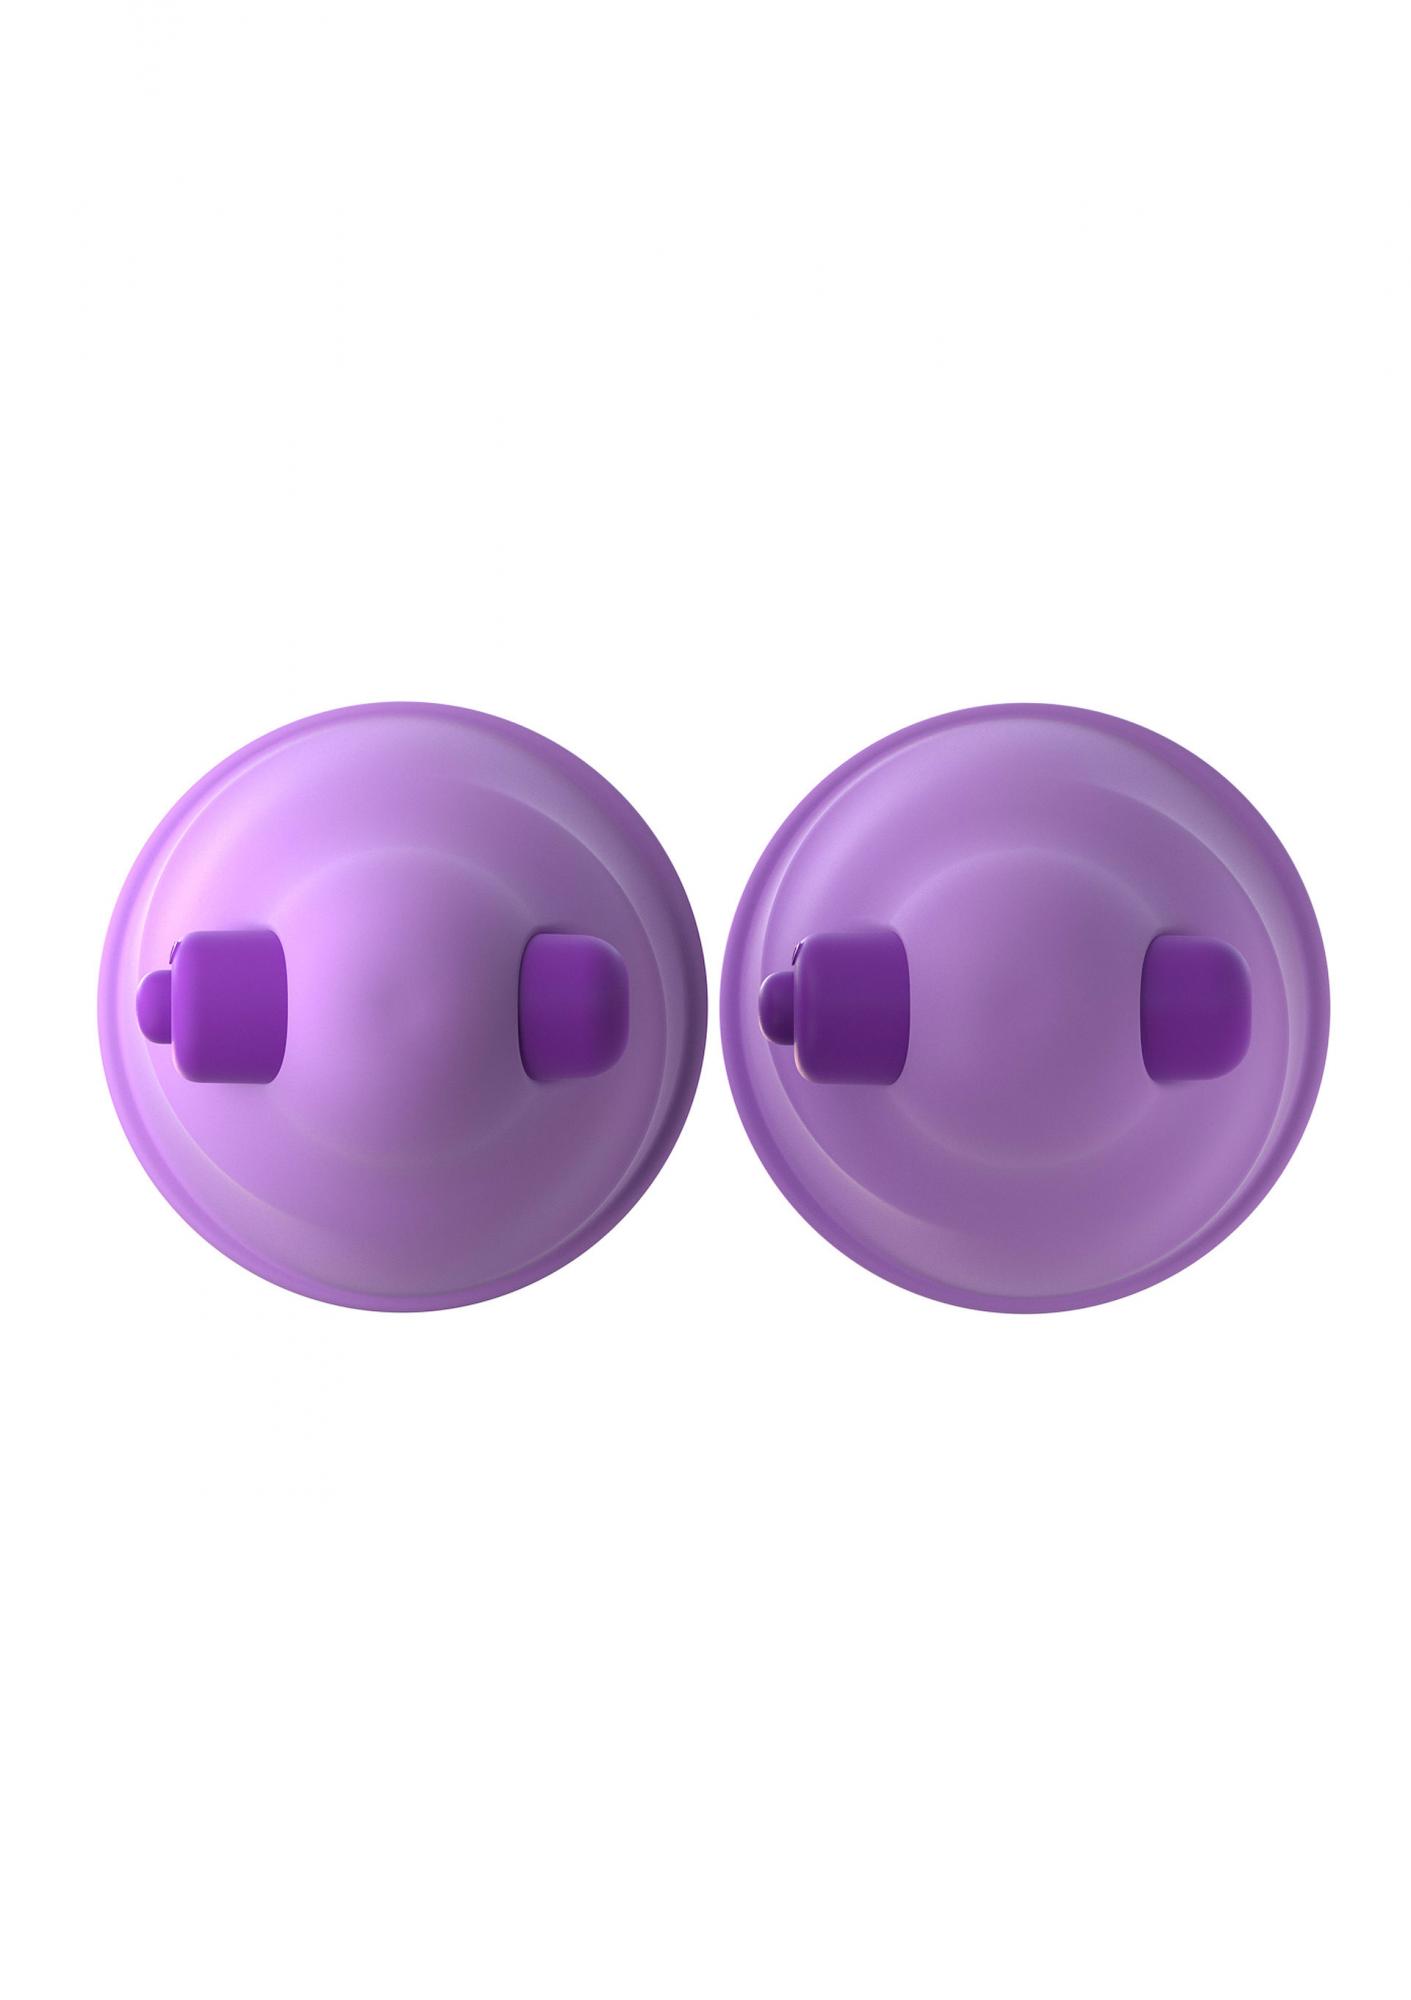 Vibrating Nipple Suck-Hers - Виброприсоски-стимуляторы на соски (фиолетовый)